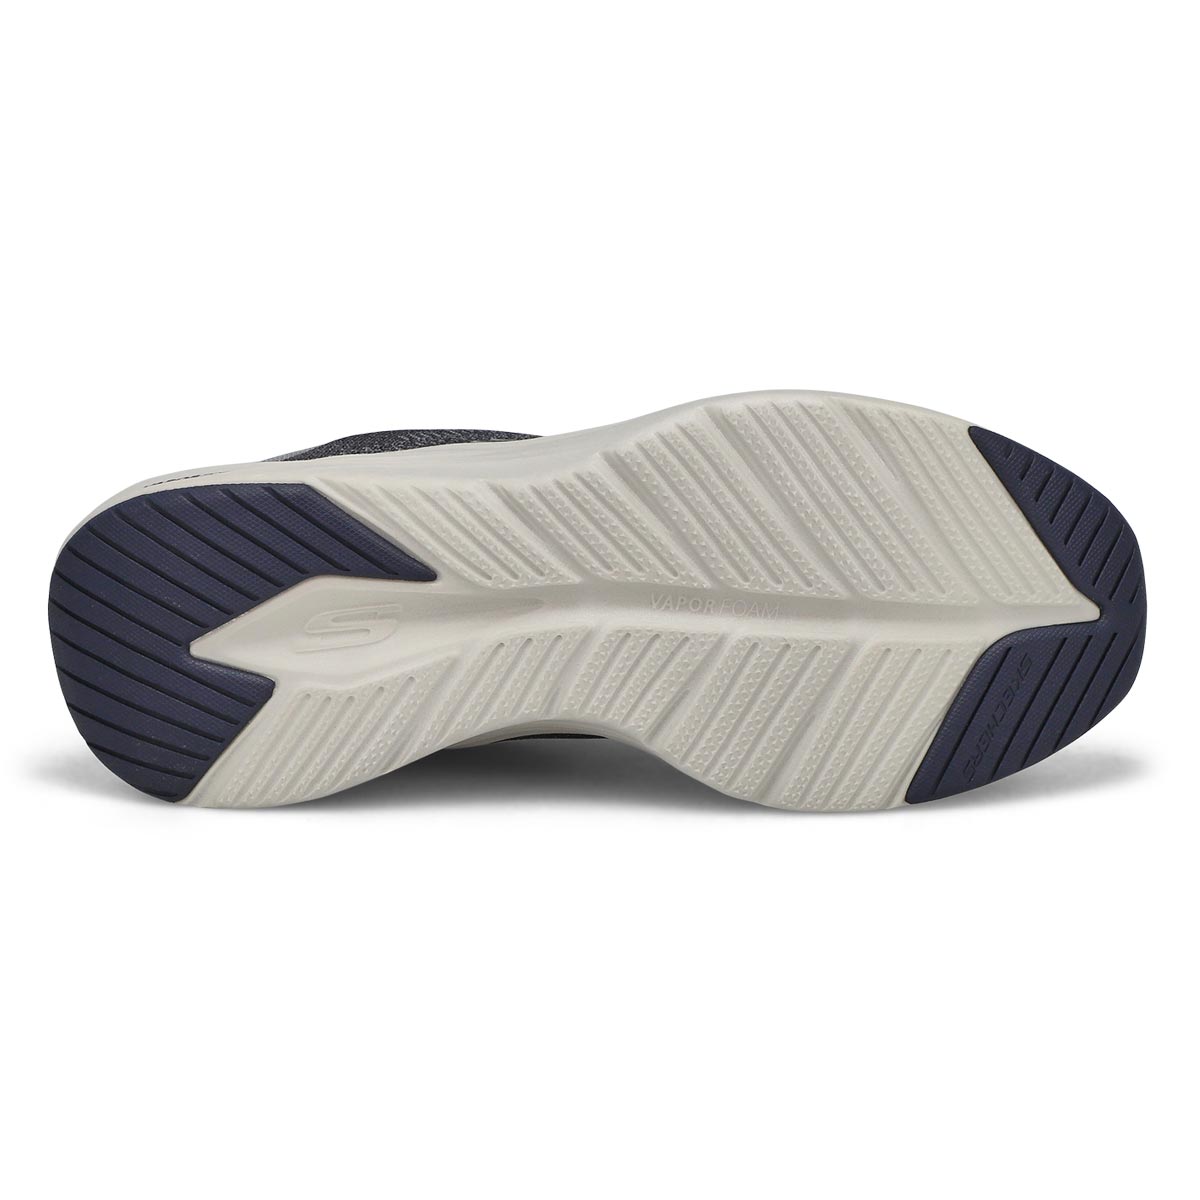 Skechers Men's Vapor Foam Sneaker- Navy /Grey | SoftMoc.com